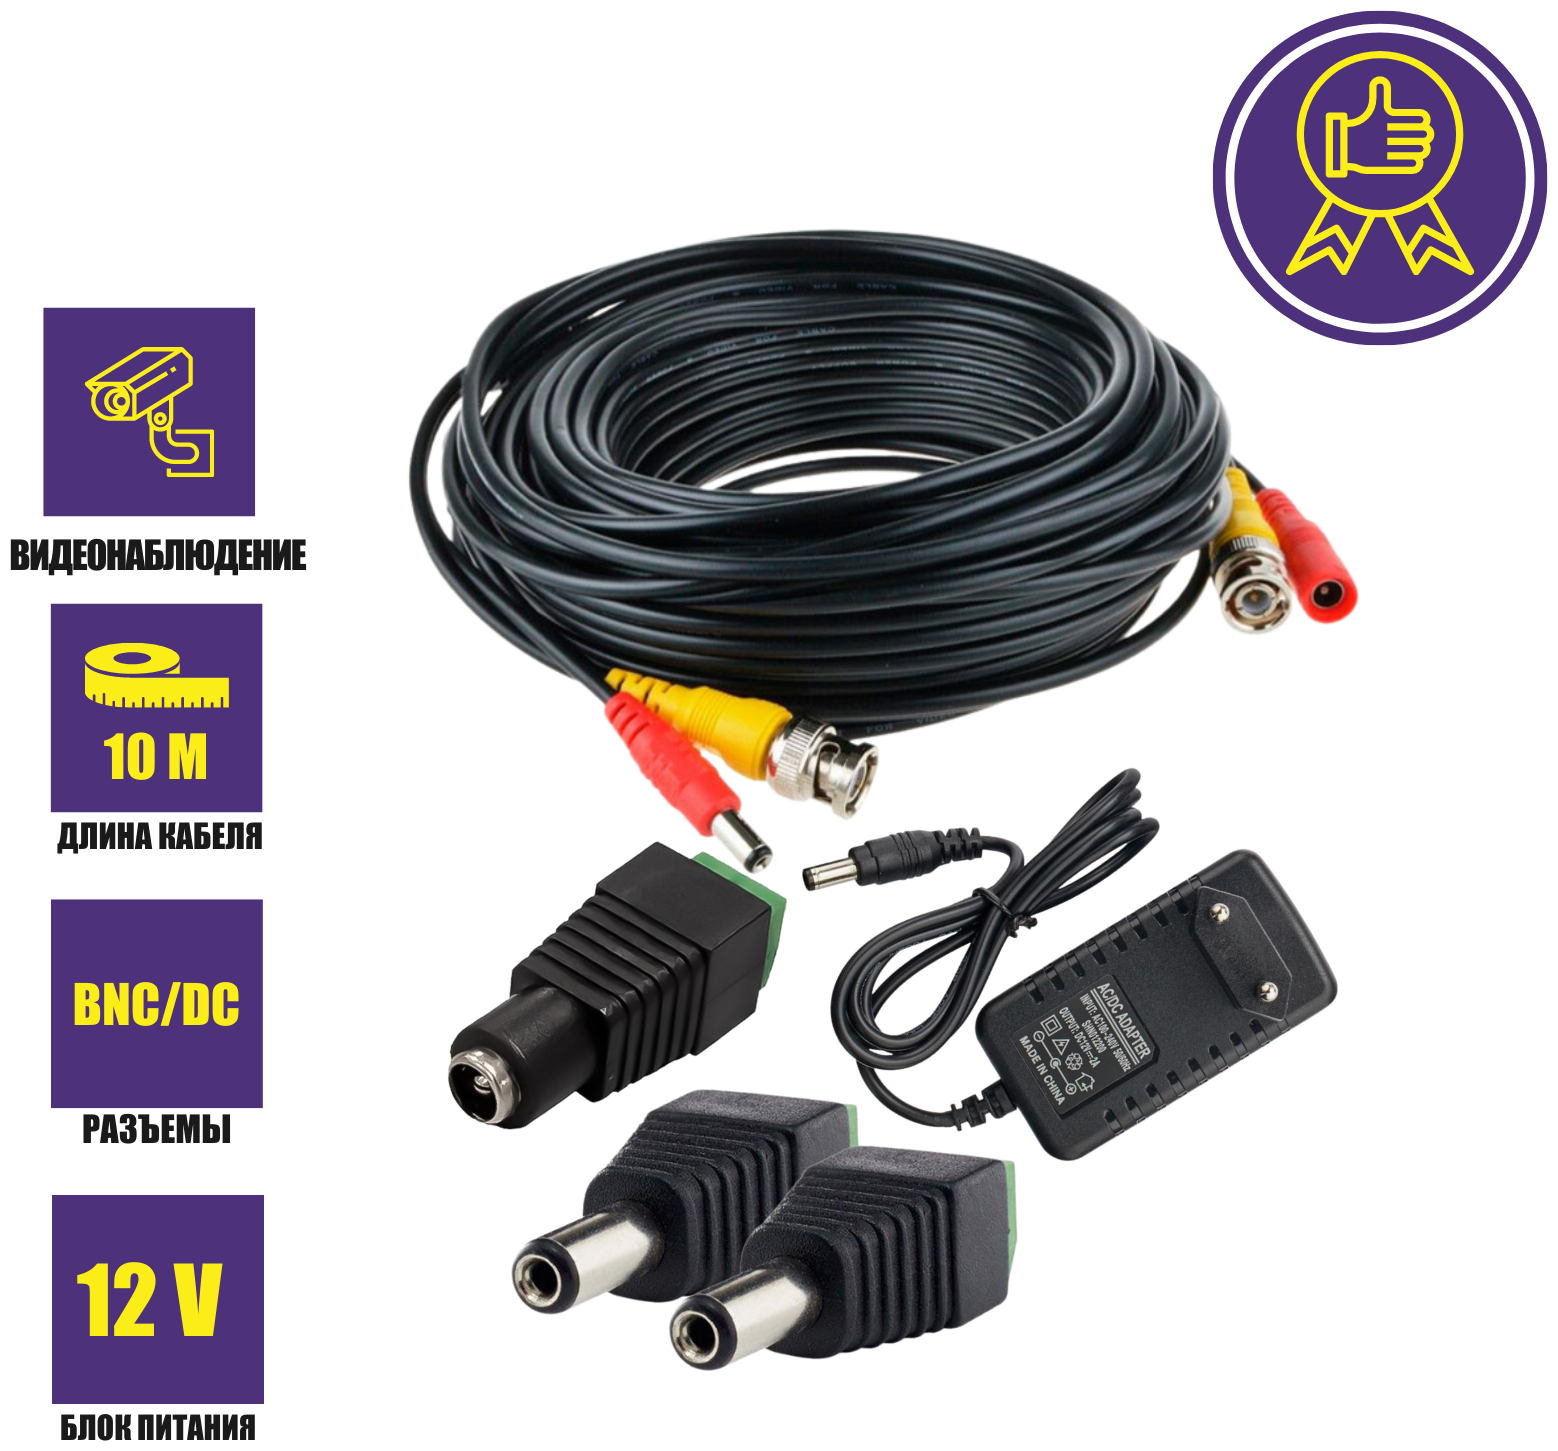 Комплект К-10.2 для системы видеонаблюдения: кабель BNC/DC 10 м, переходники DC(мама), DC(папа) и блок питания